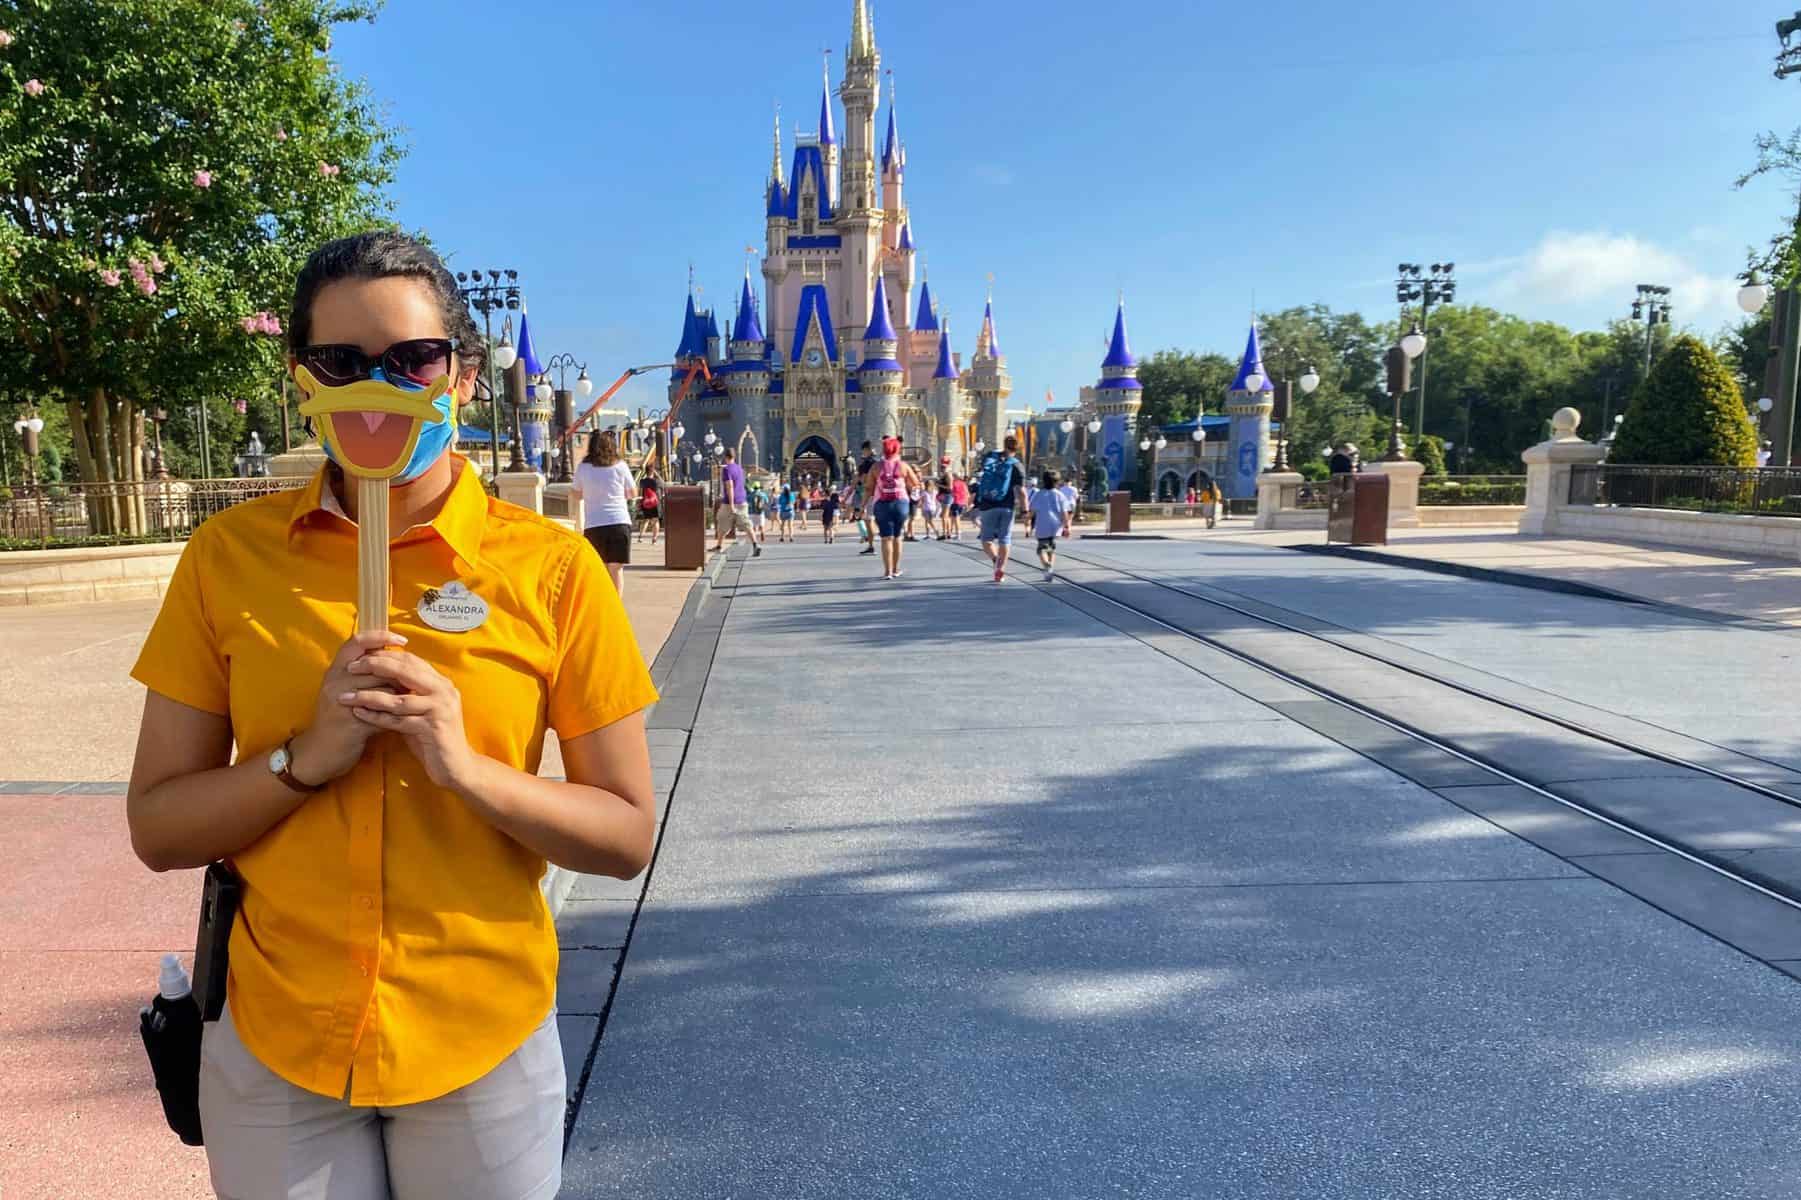 Mask tips for Disney World trips